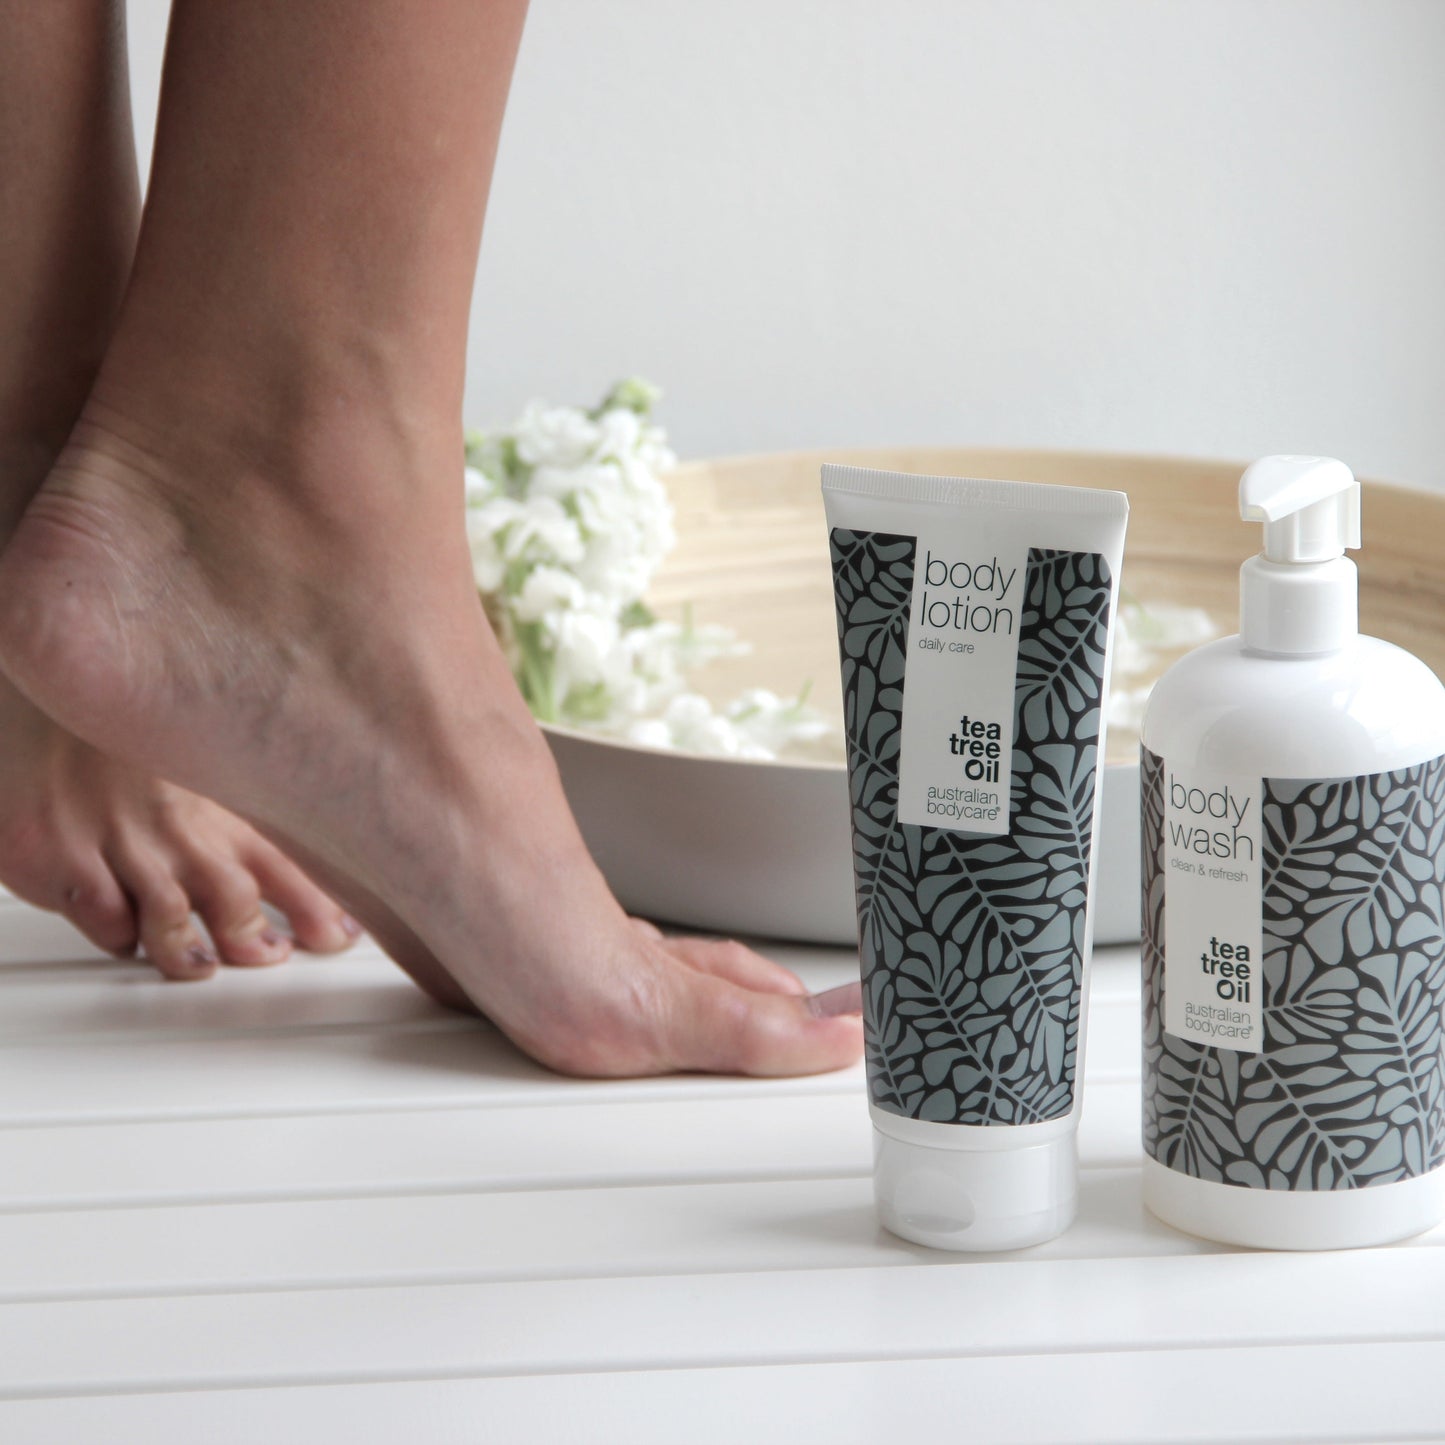 Paket mot illaluktande fötter och fotsvett - 3 effektiva produkter för fötter och skor som luktar